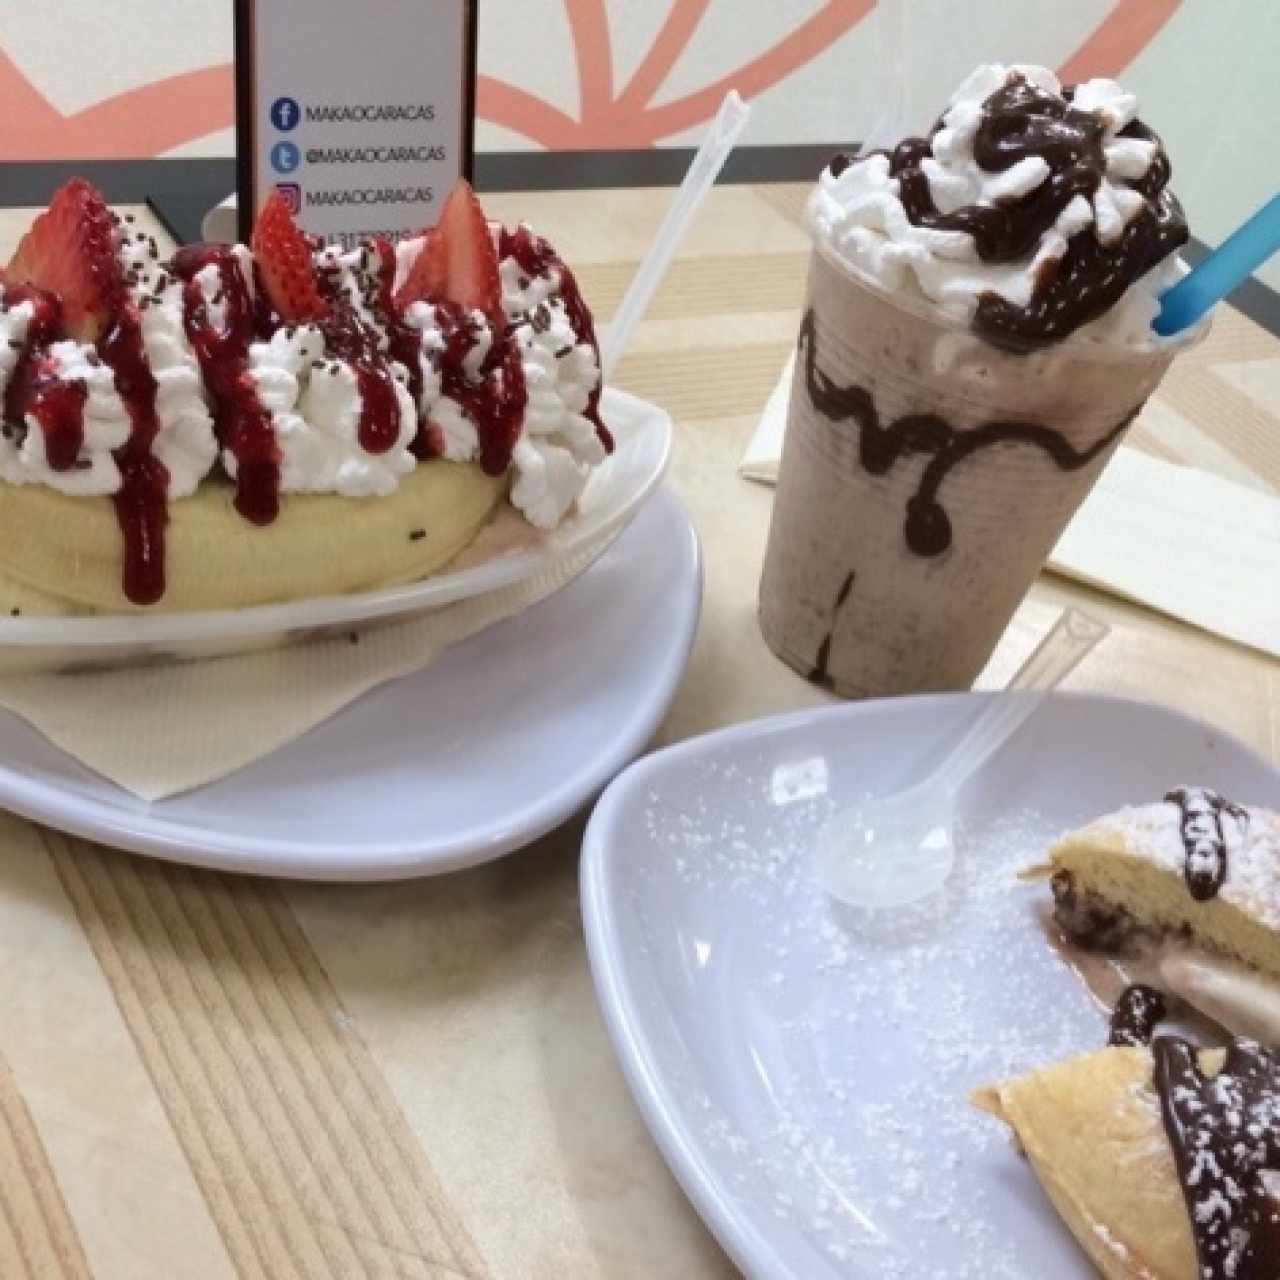 banana split, merengada de helado de brownie y panini gelato con helado de nutella